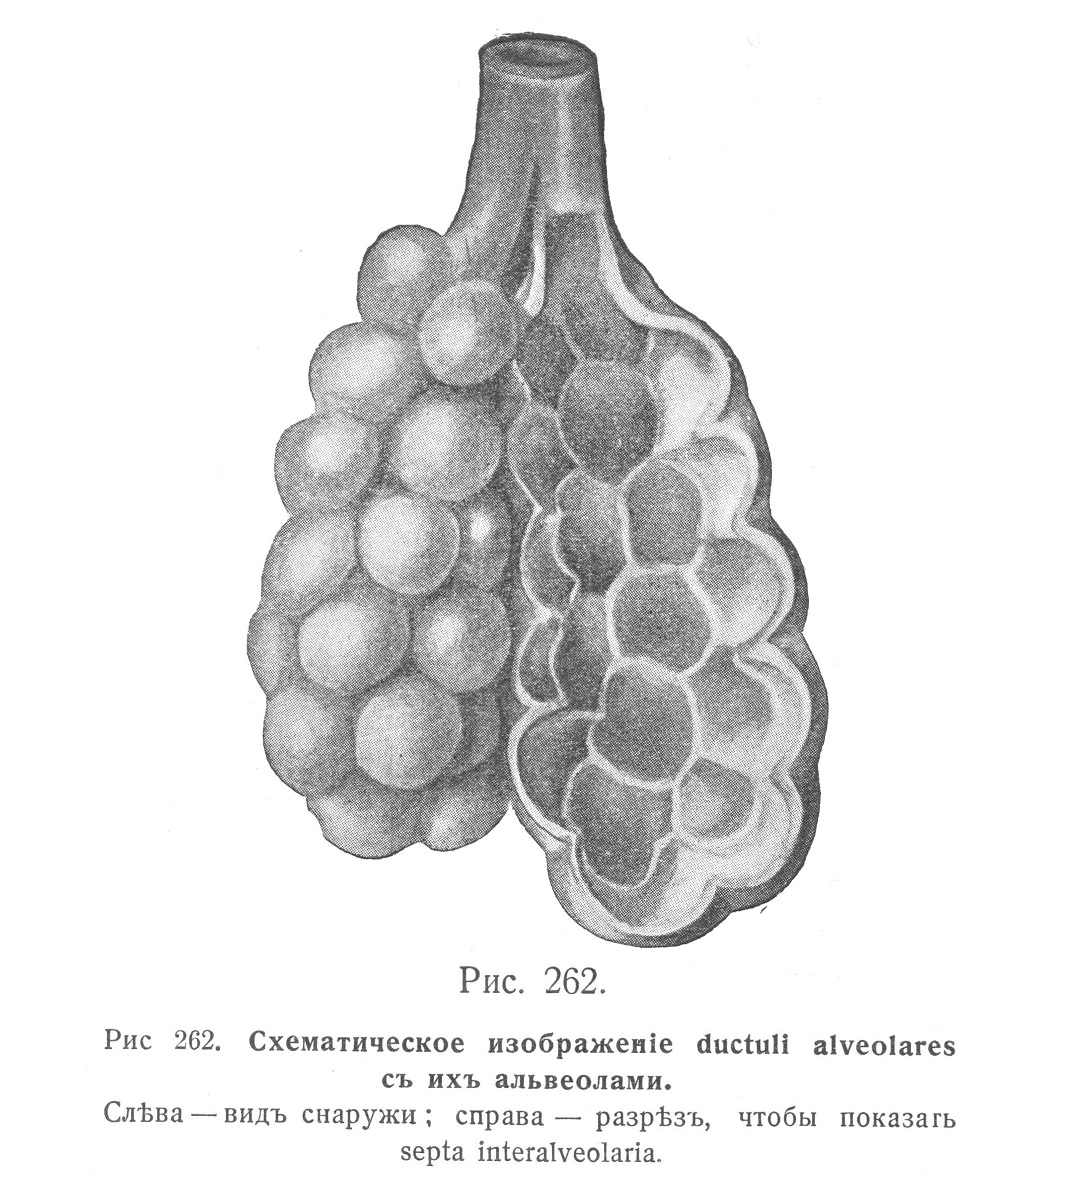 Схематическое изображение ductuli alveolares с их альвеолами.